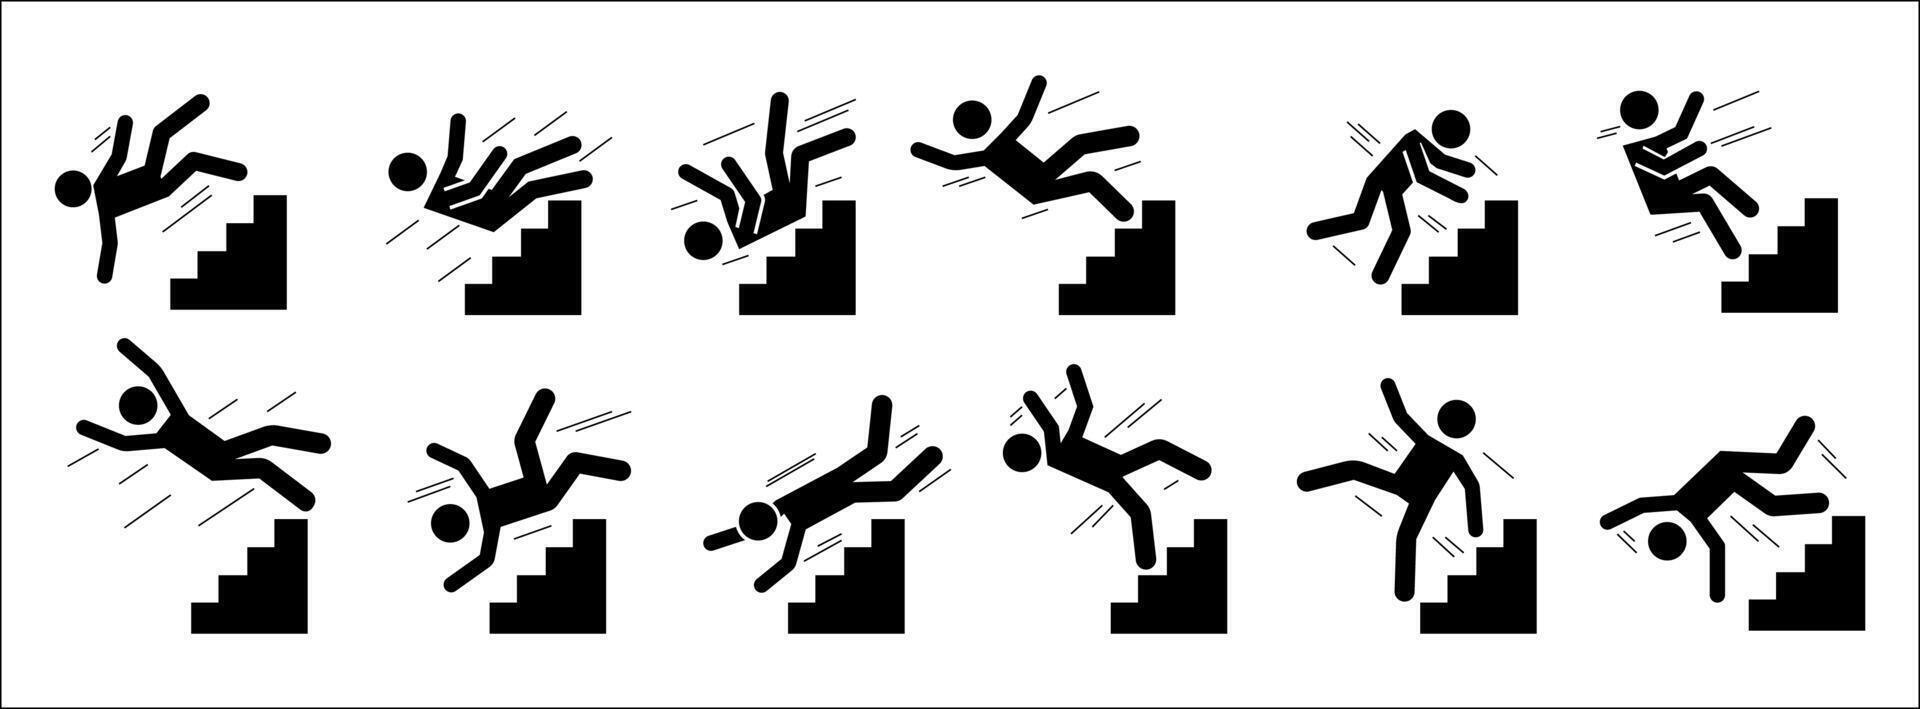 bâton homme tomber bas. noir silhouette pictogrammes de gens chute de escalier et échelle, épuisé et fatigué personnes. vecteur ensemble